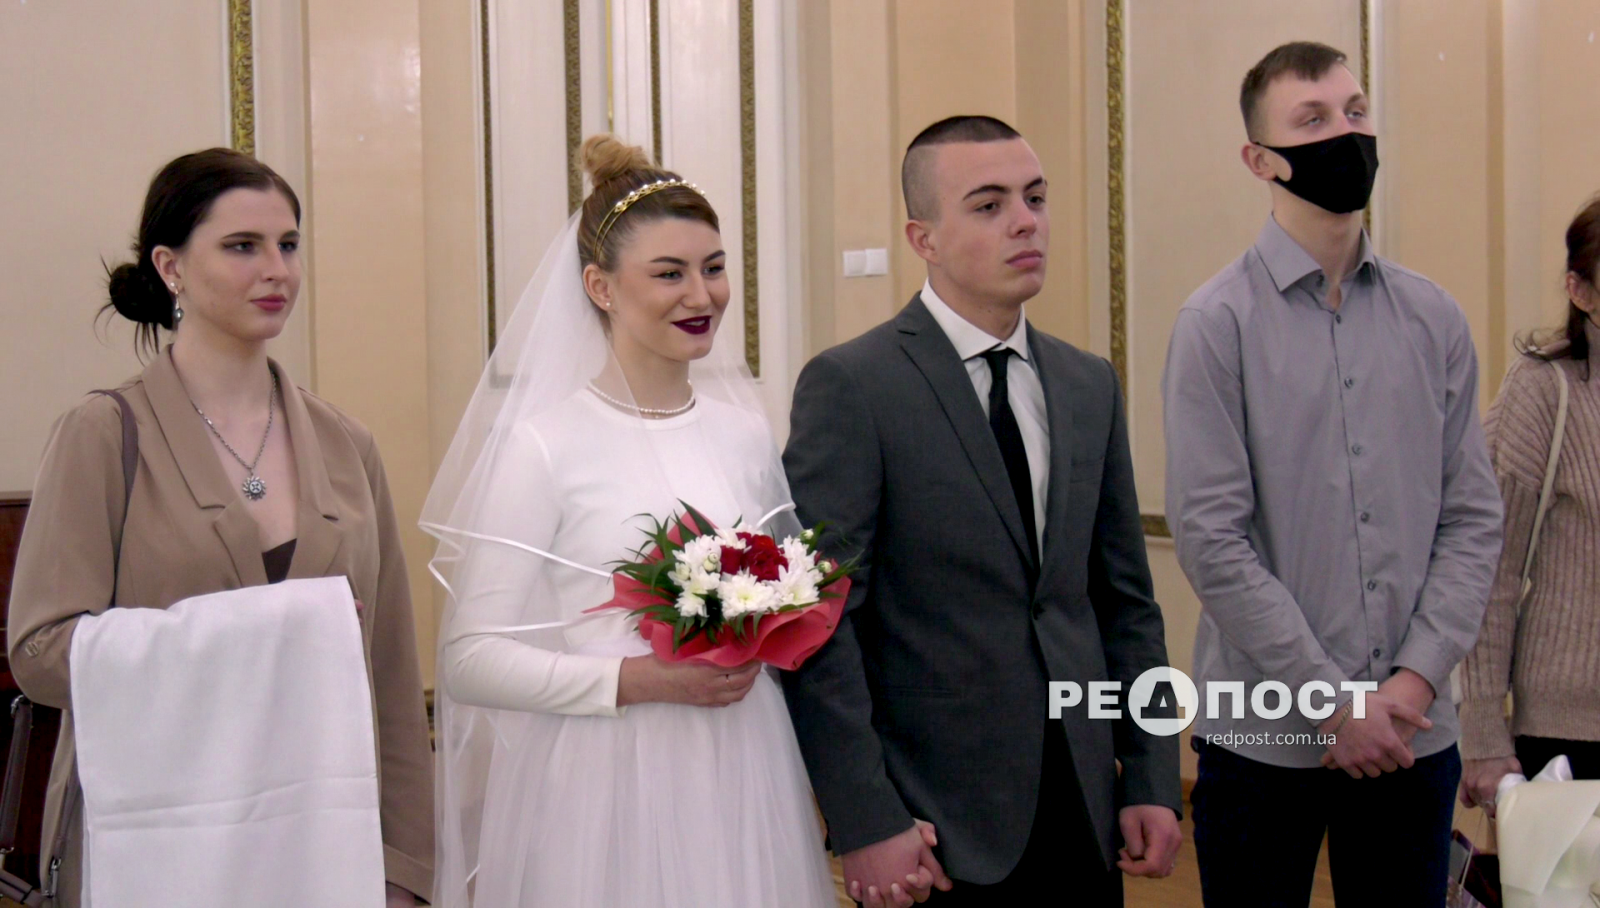 Свадебный бум в Харькове: какие даты особо популярны у молодожёнов